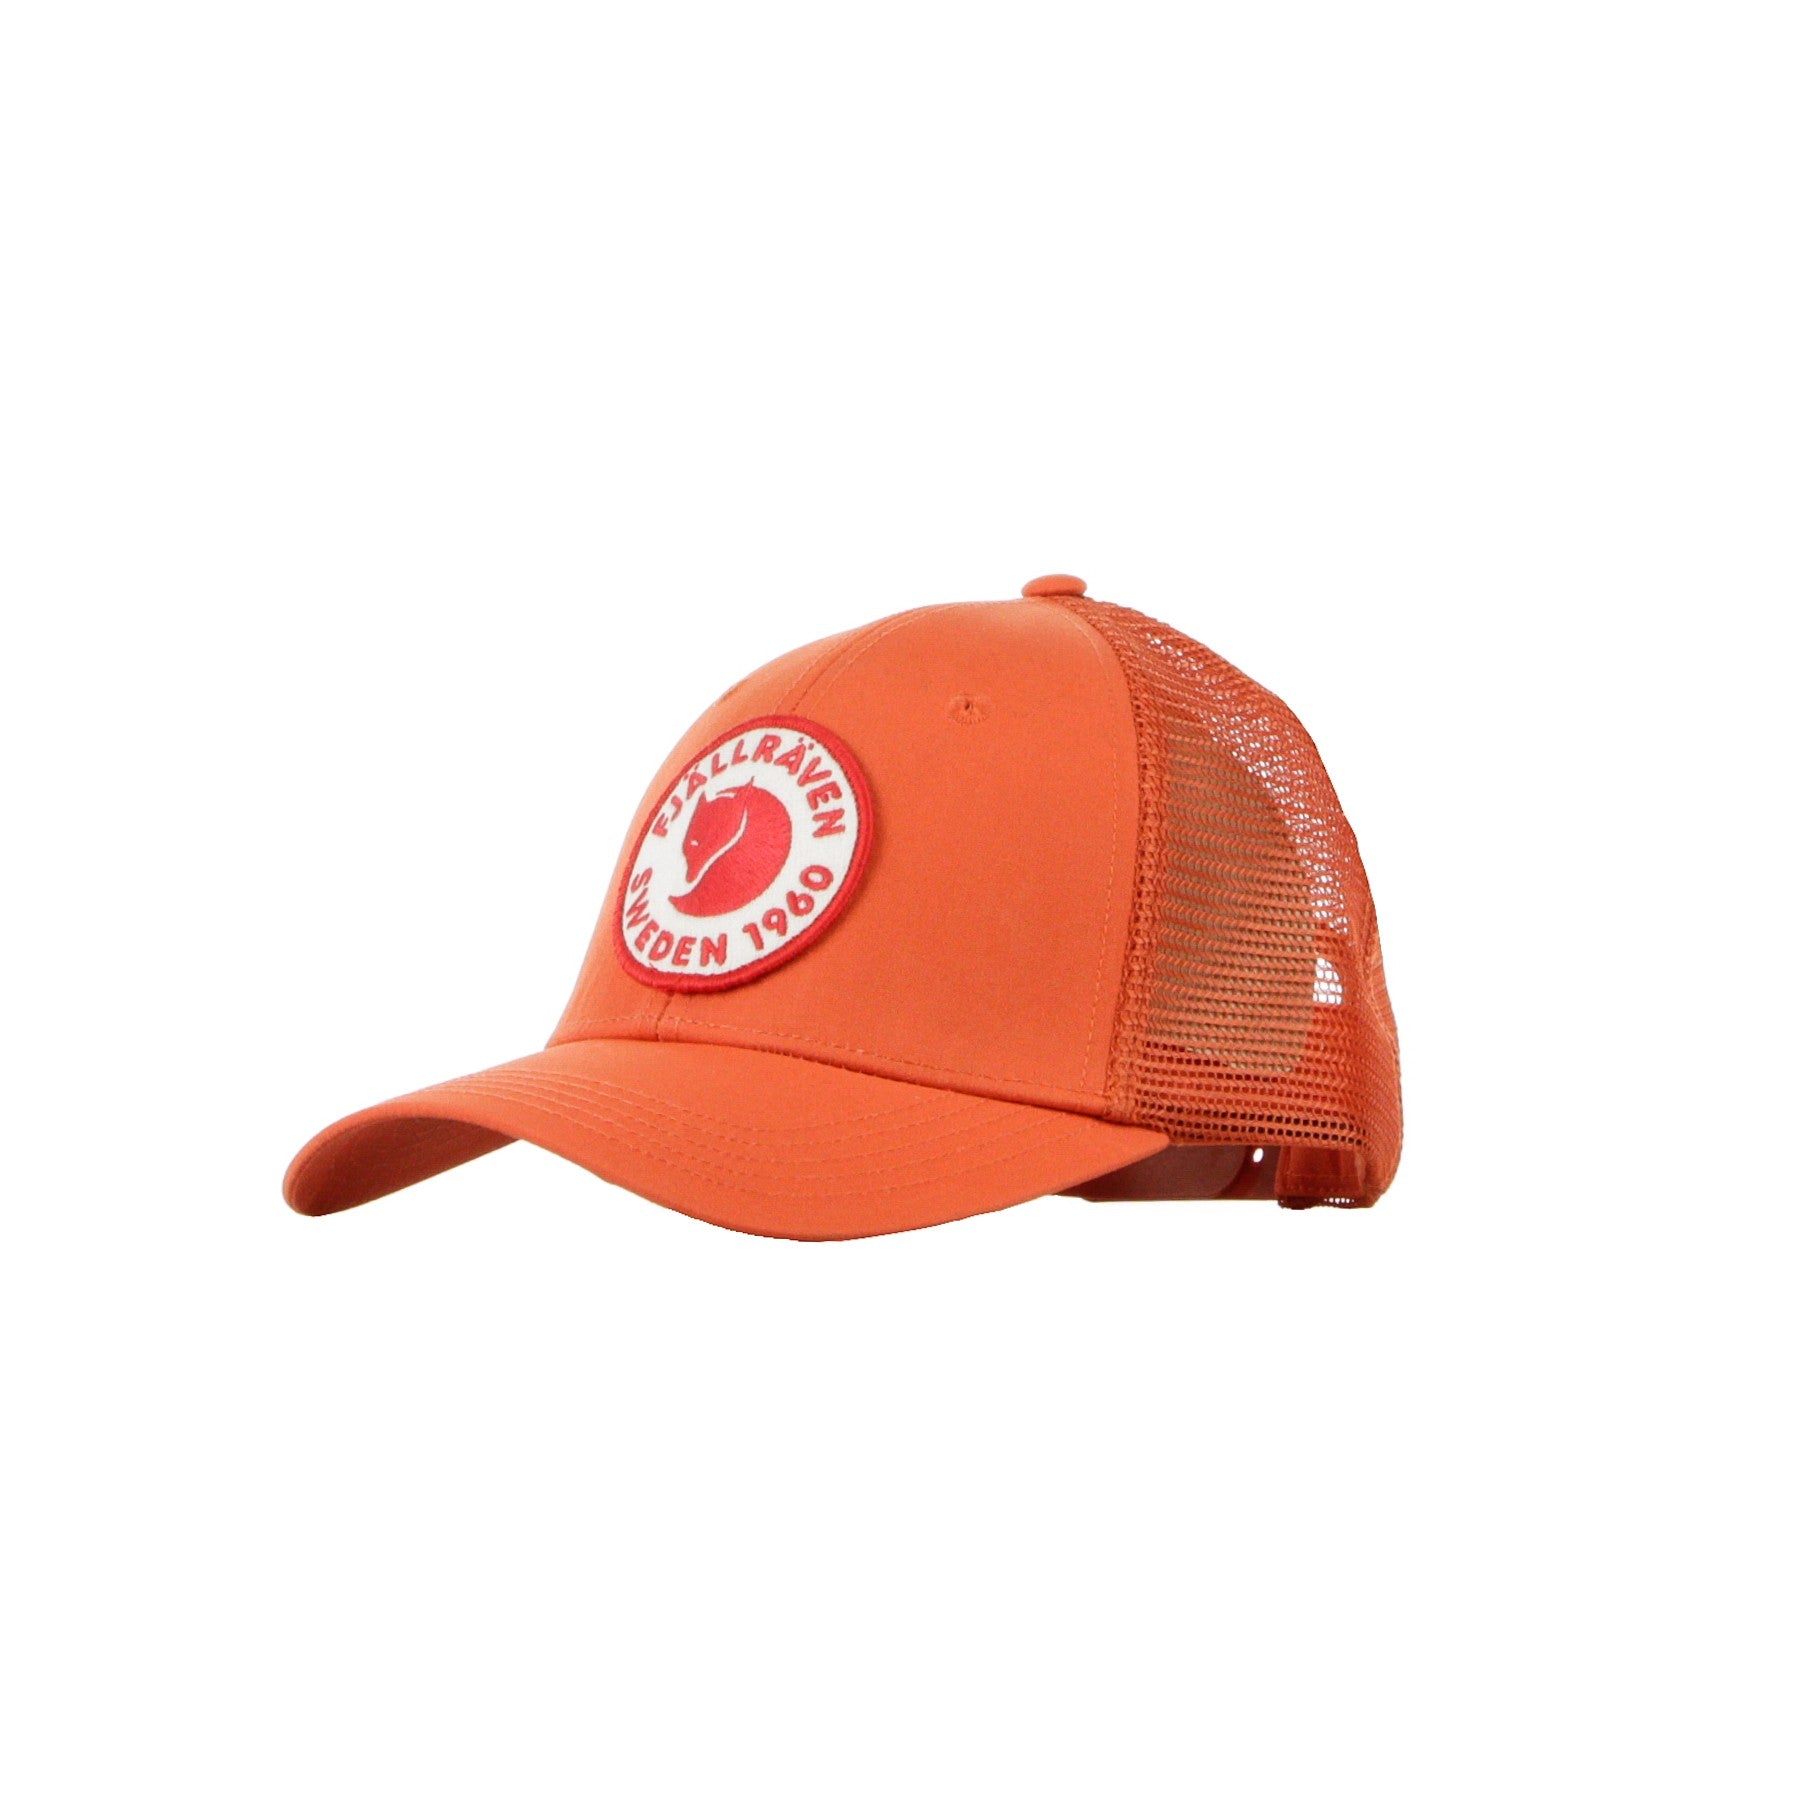 Curved Visor Cap for Men with Langtradarkeps Rowan Red Logo